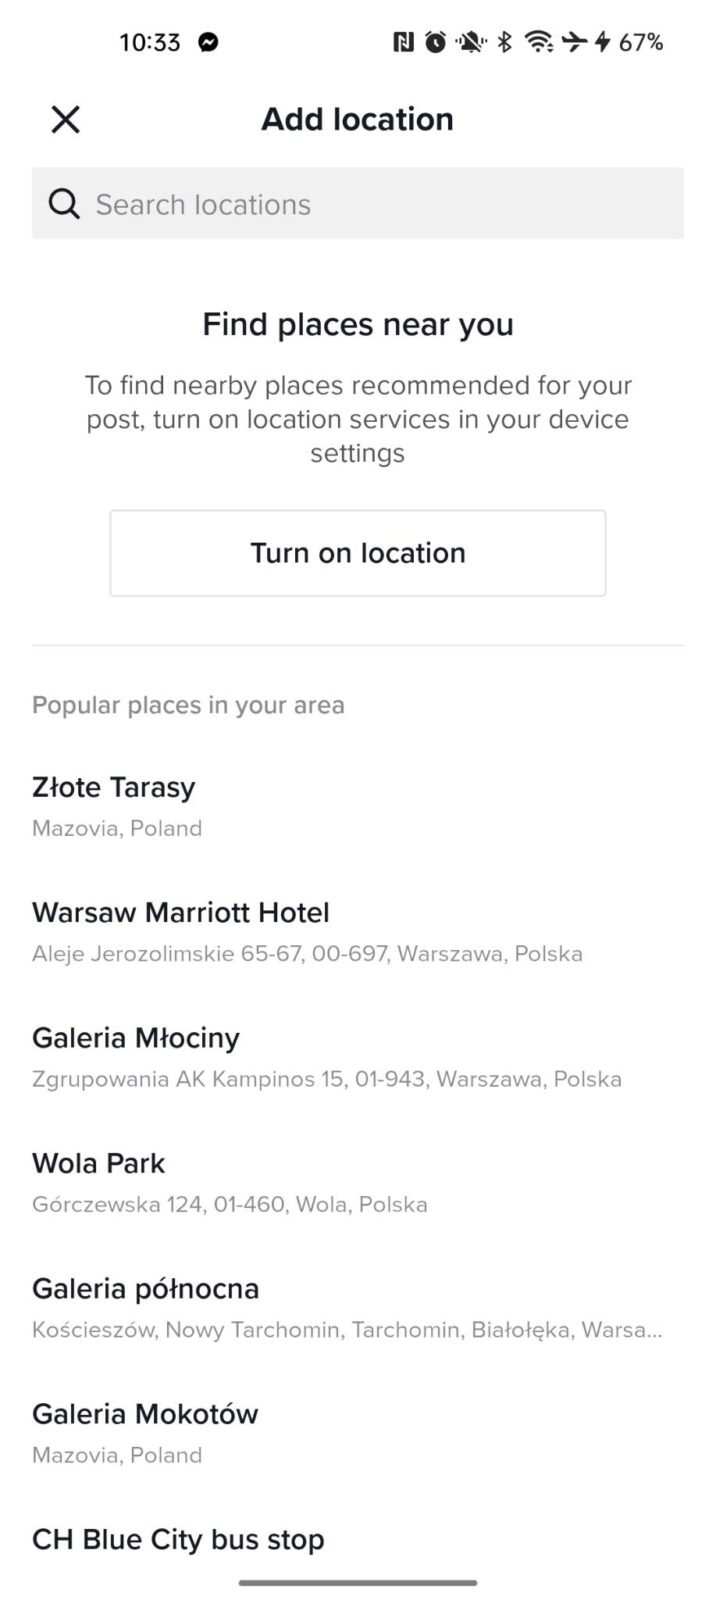 zrzut ekranu z aplikacji TikTok z proponowanymi lokalizacjami